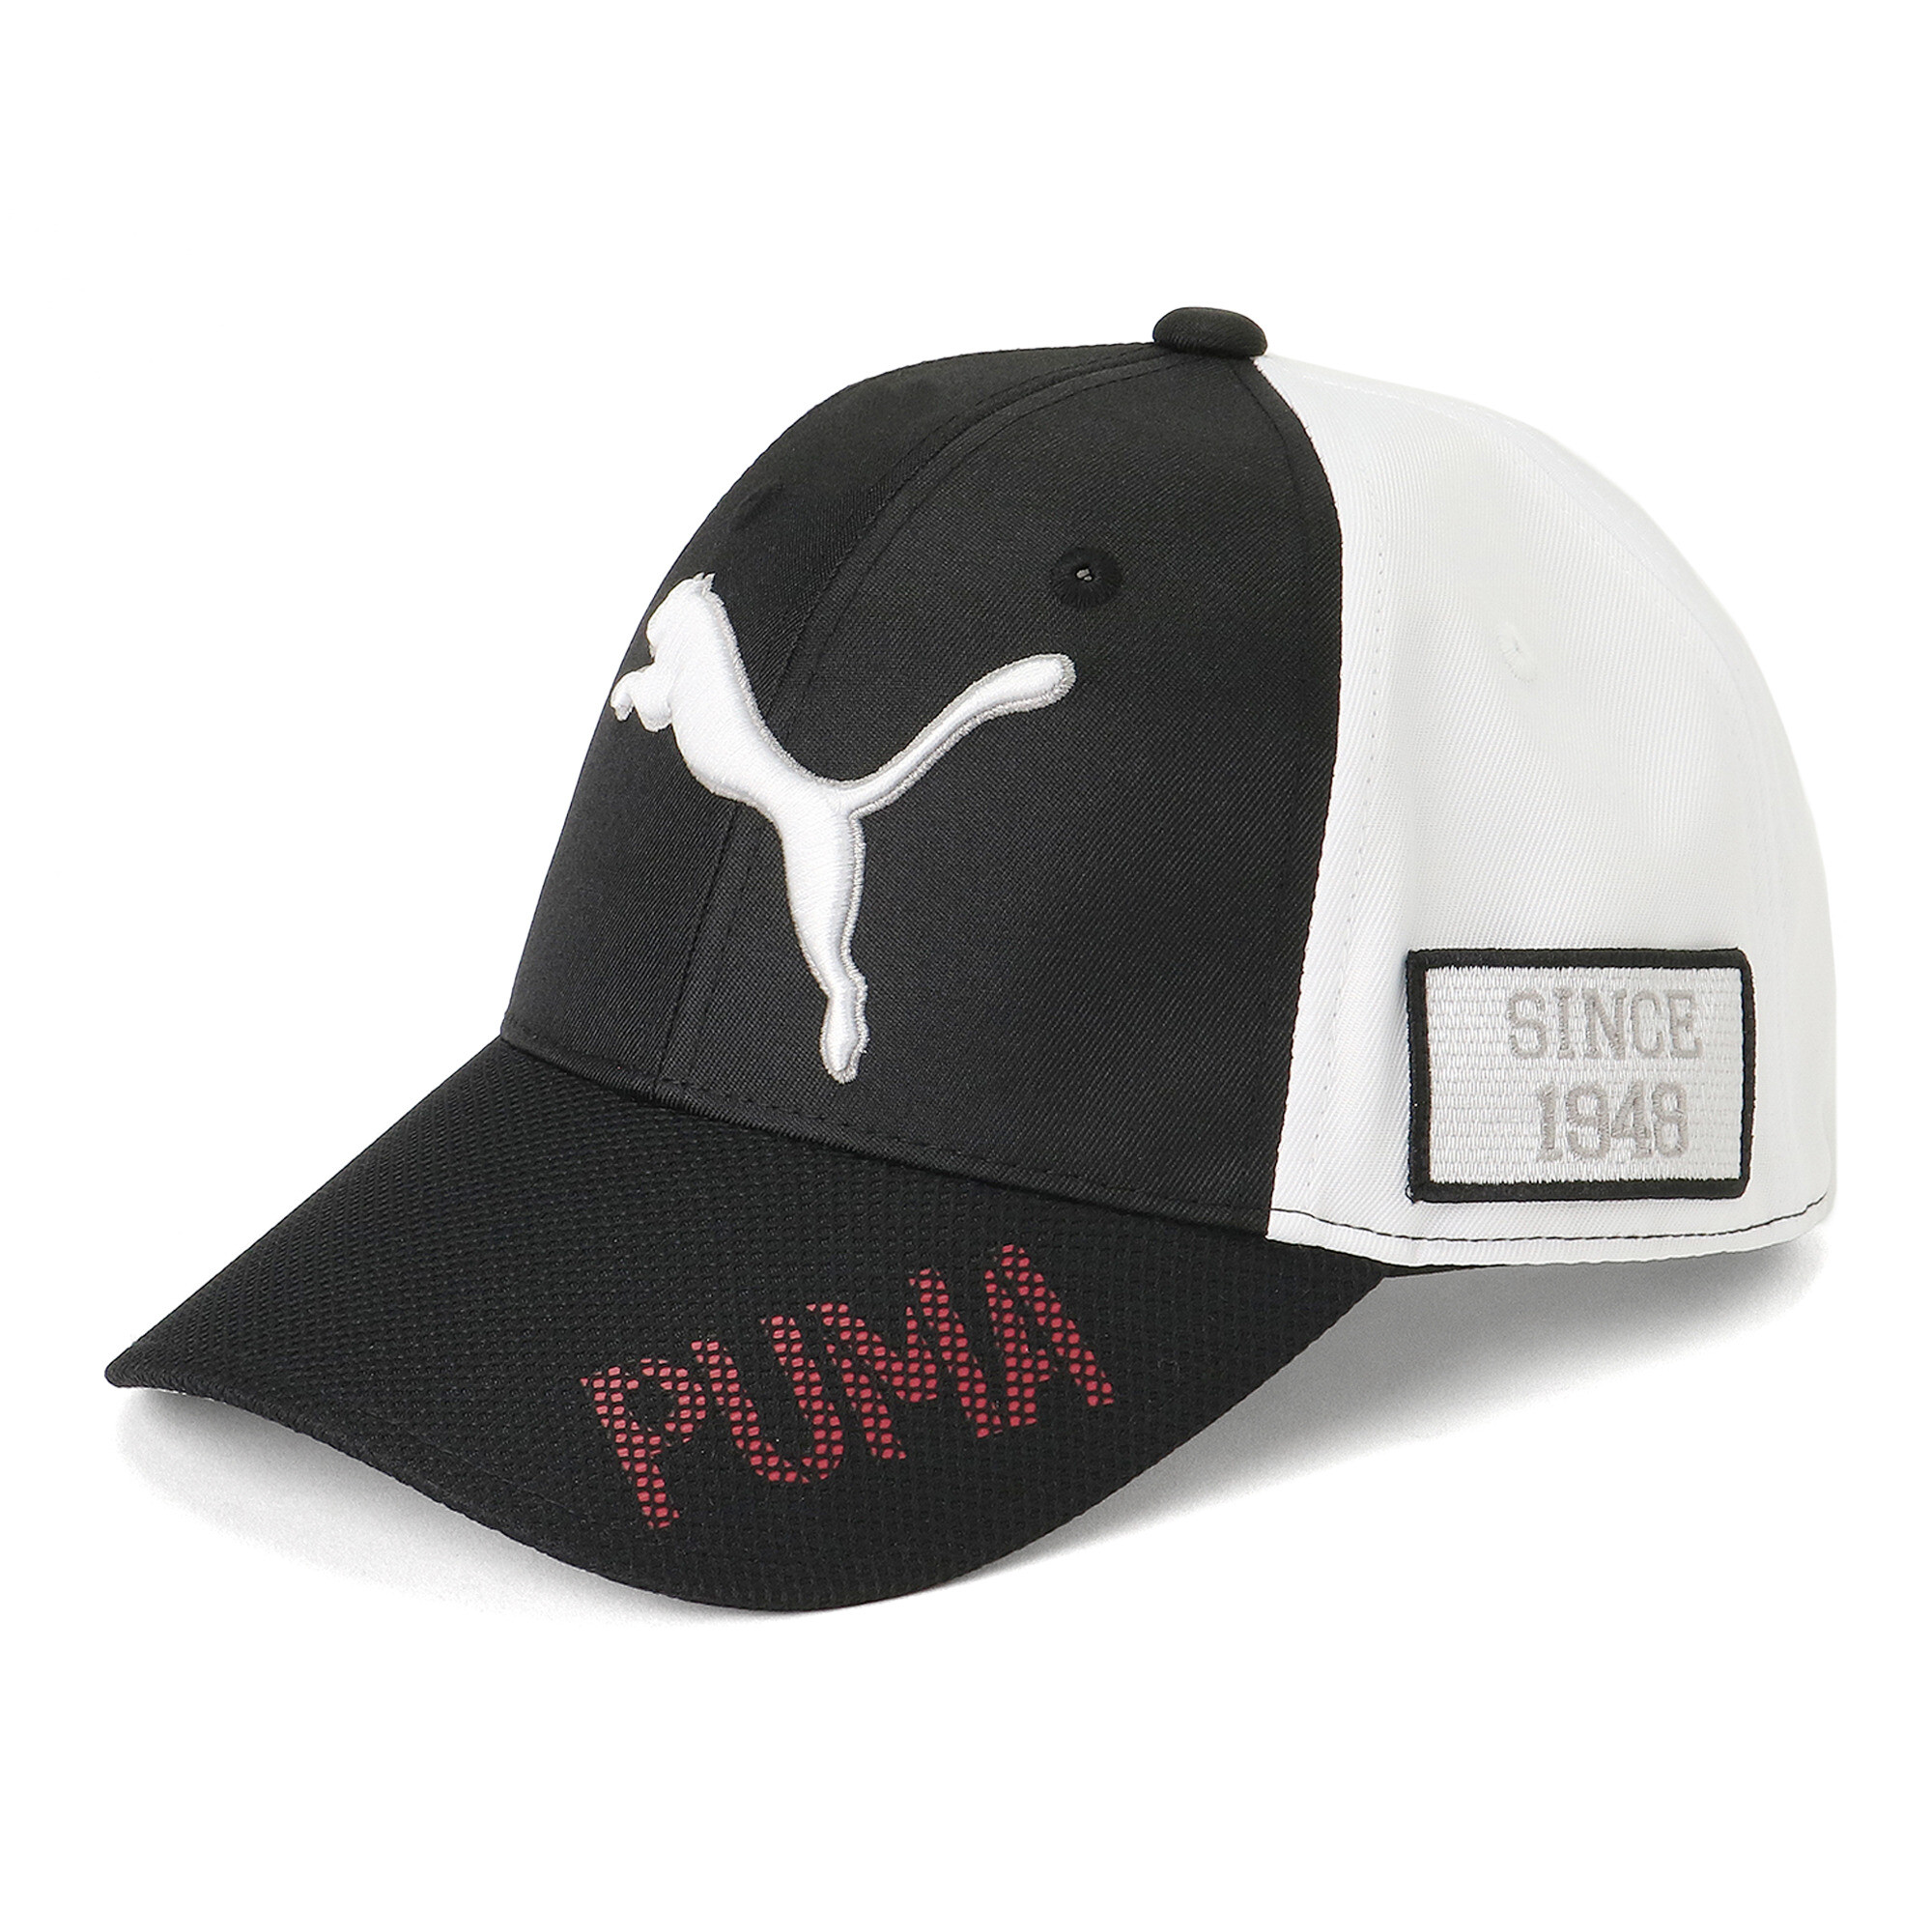 プーマ メンズ ゴルフ ツアー パフォーマンス キャップ メンズ PUMA Black-Bright White ｜PUMA.com画像